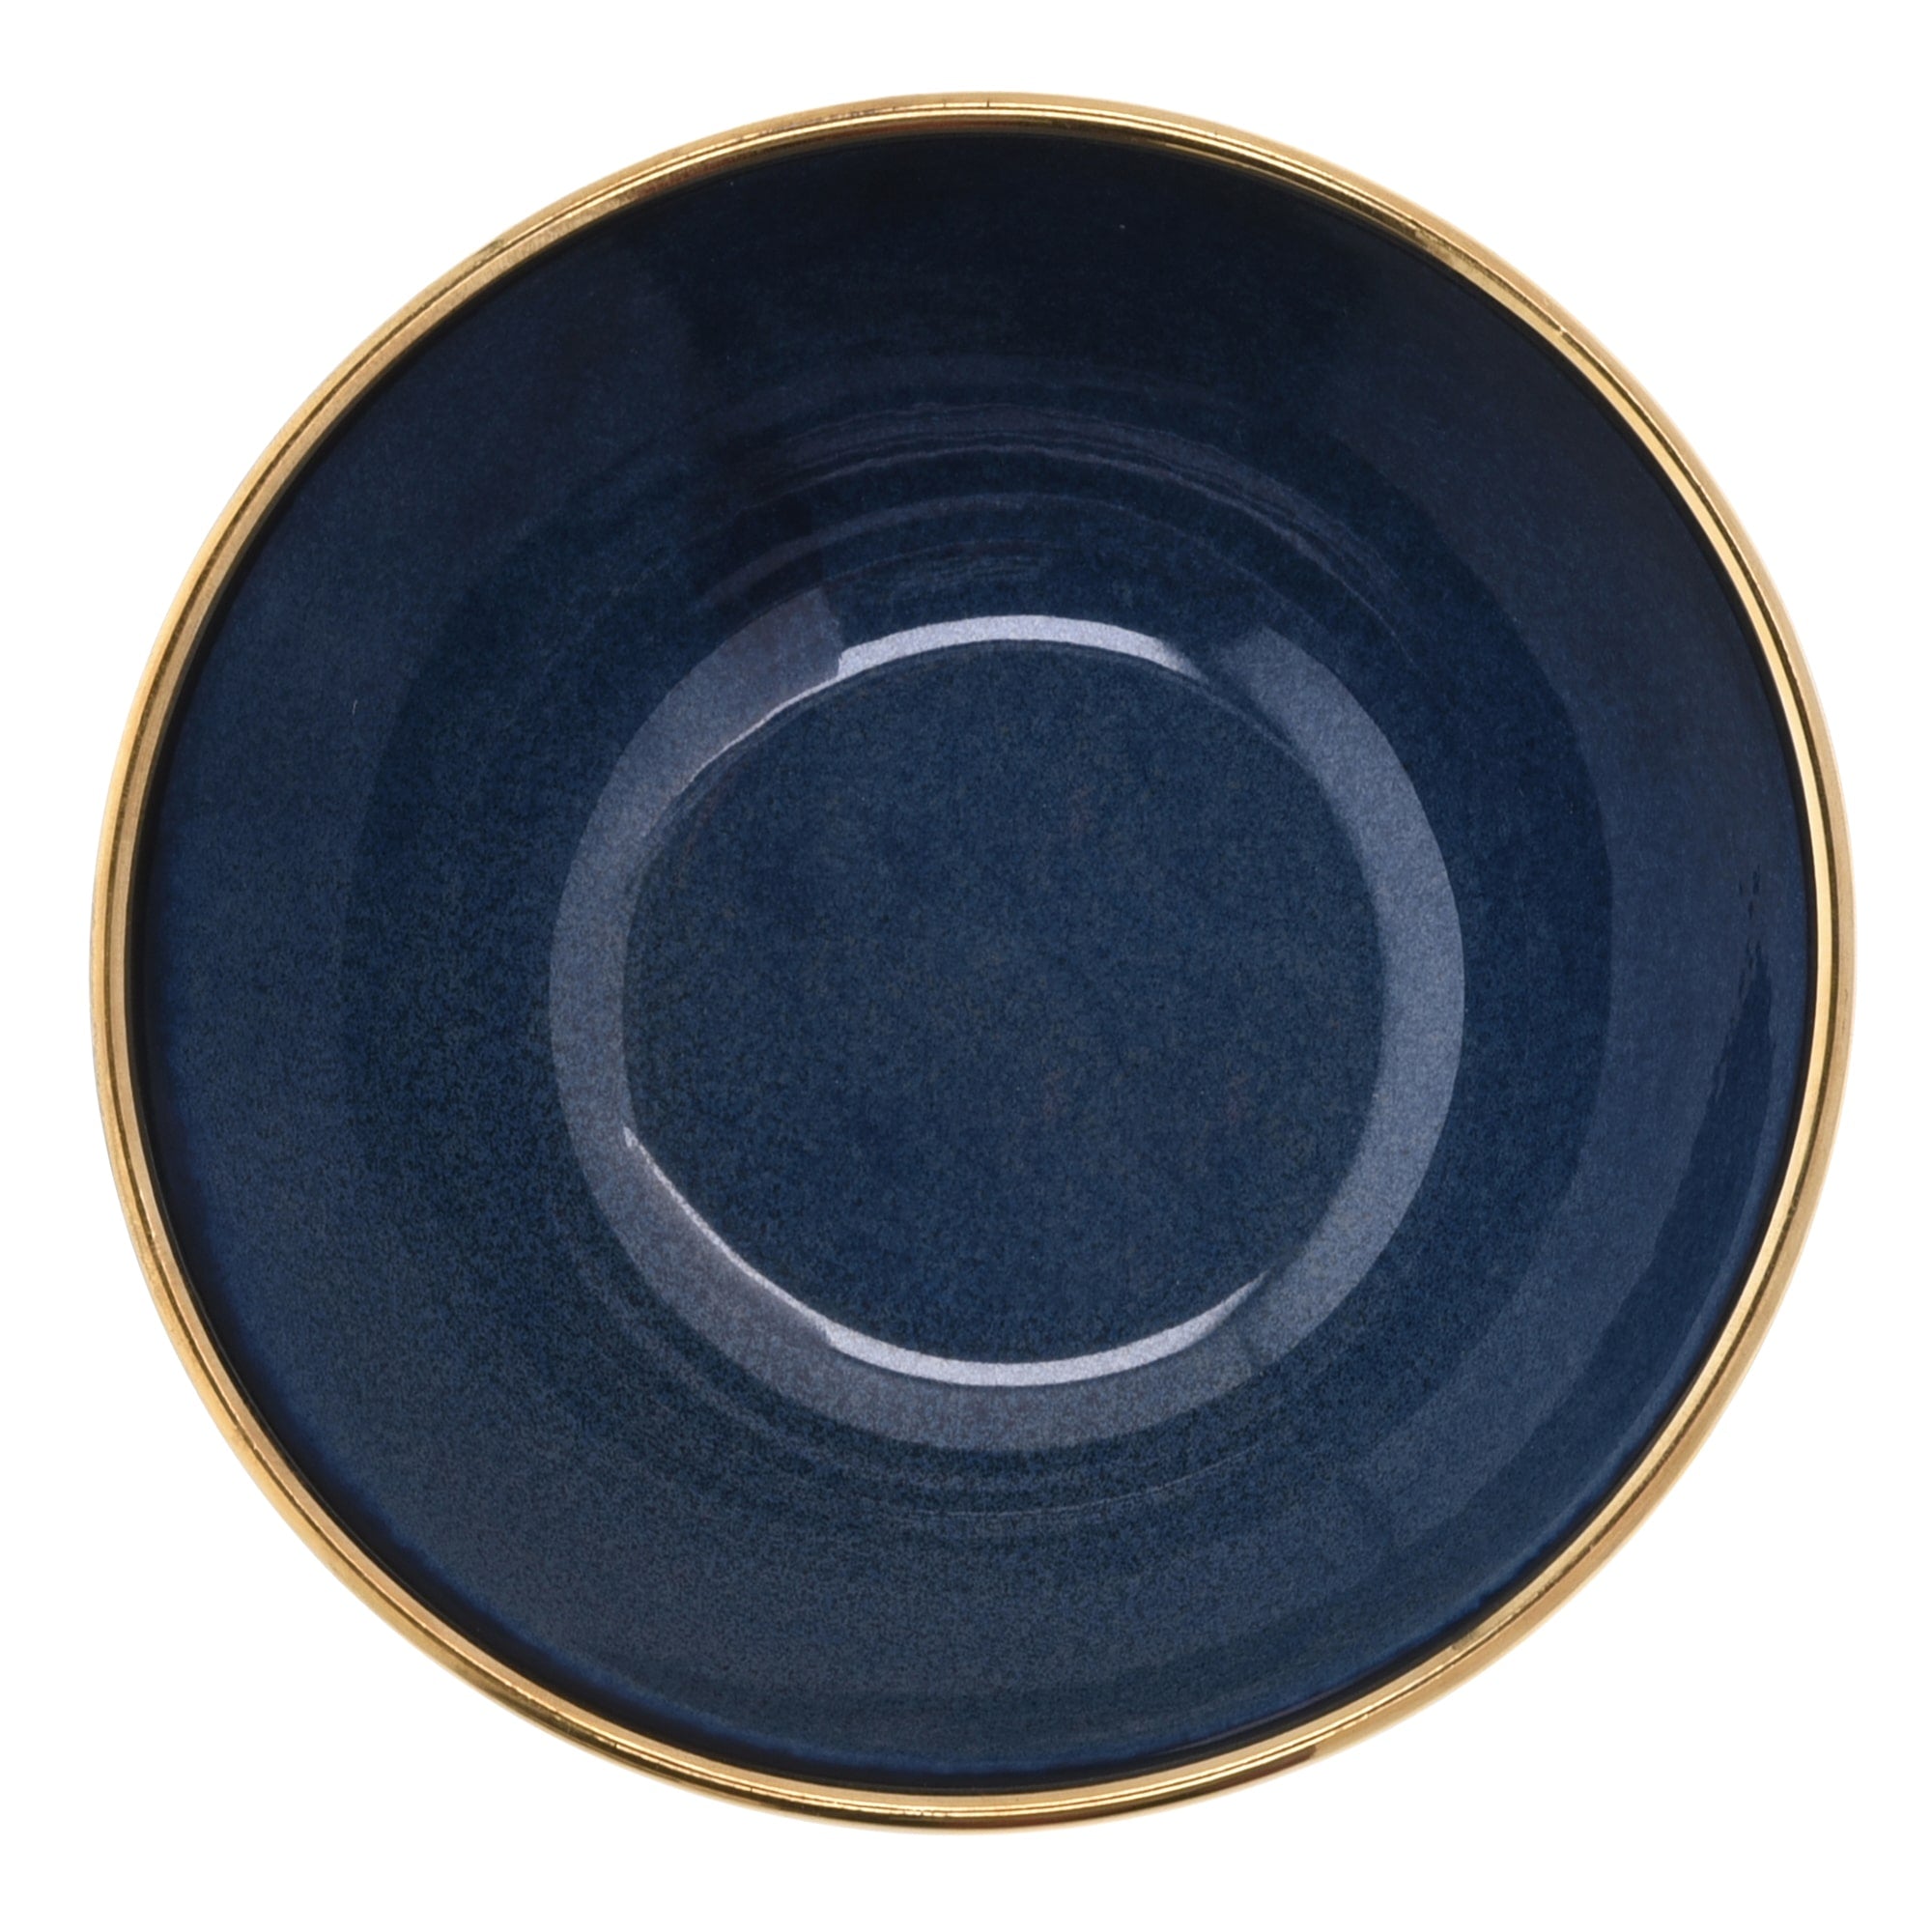 16-OZ Navy Stoneware Bowl with Gold Rim - Set of Four